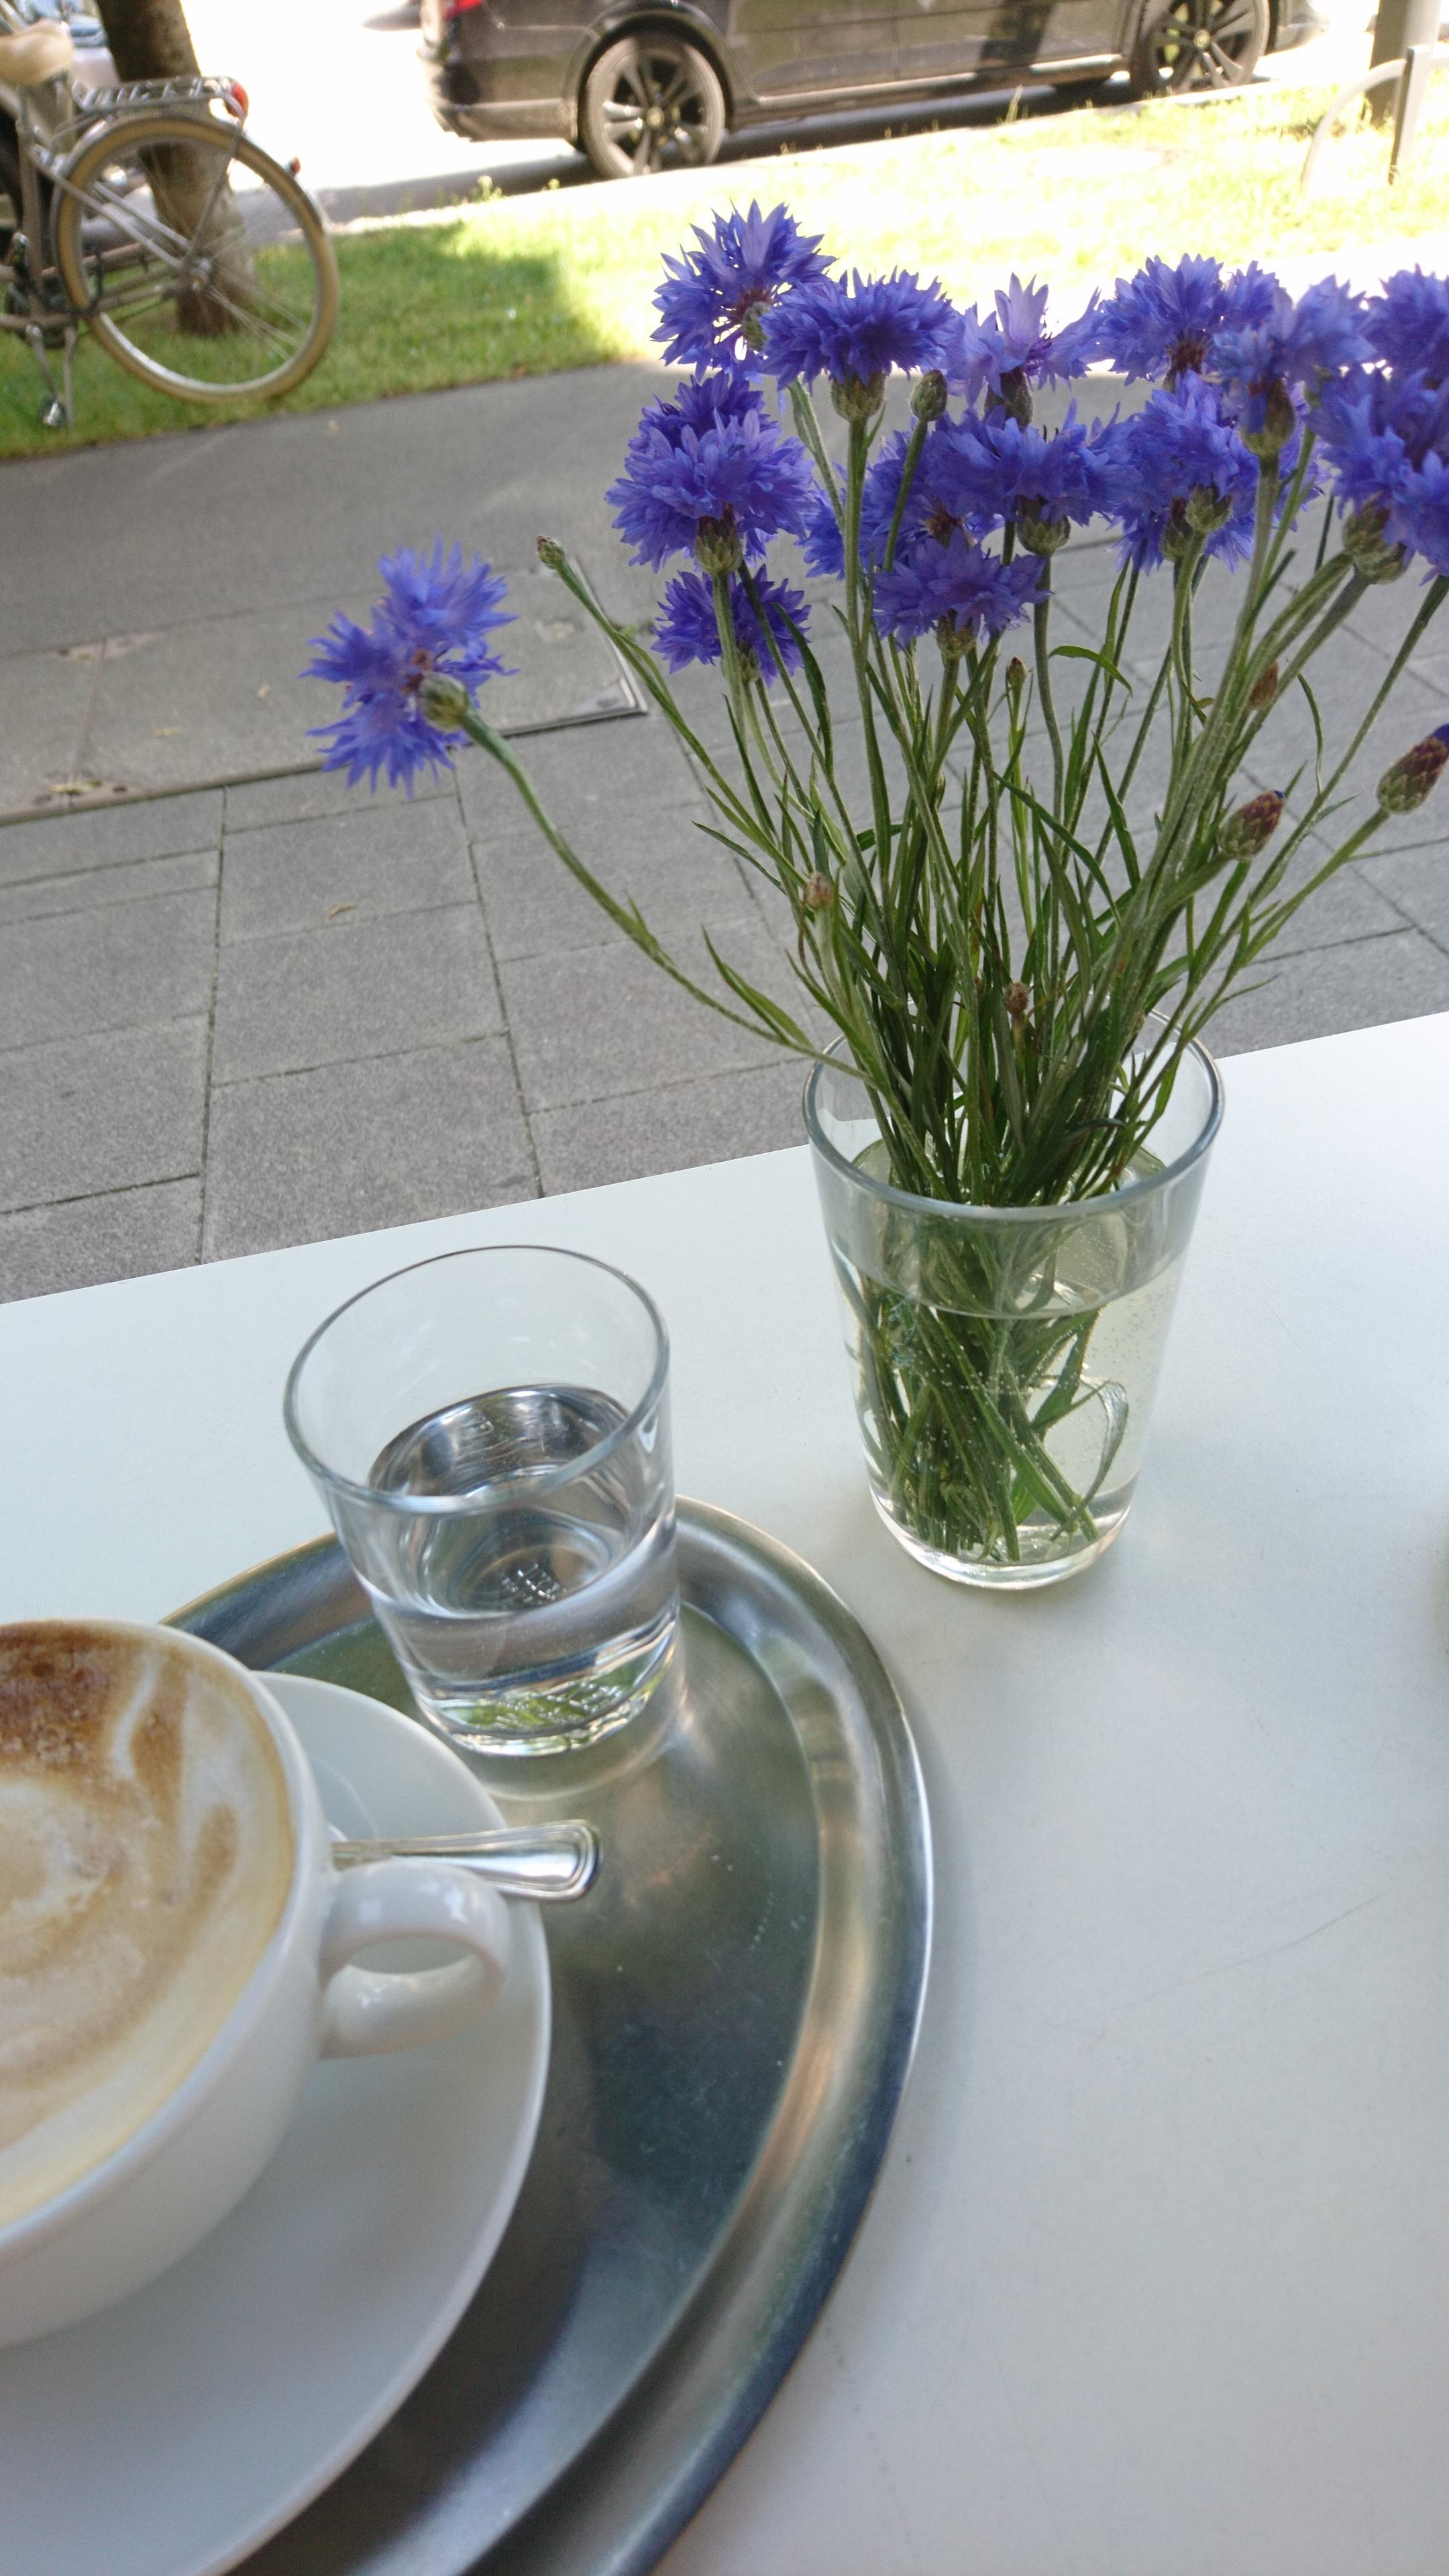 Kornblumen & Kaffee mitten in der City ☀️

#Lifeisgood